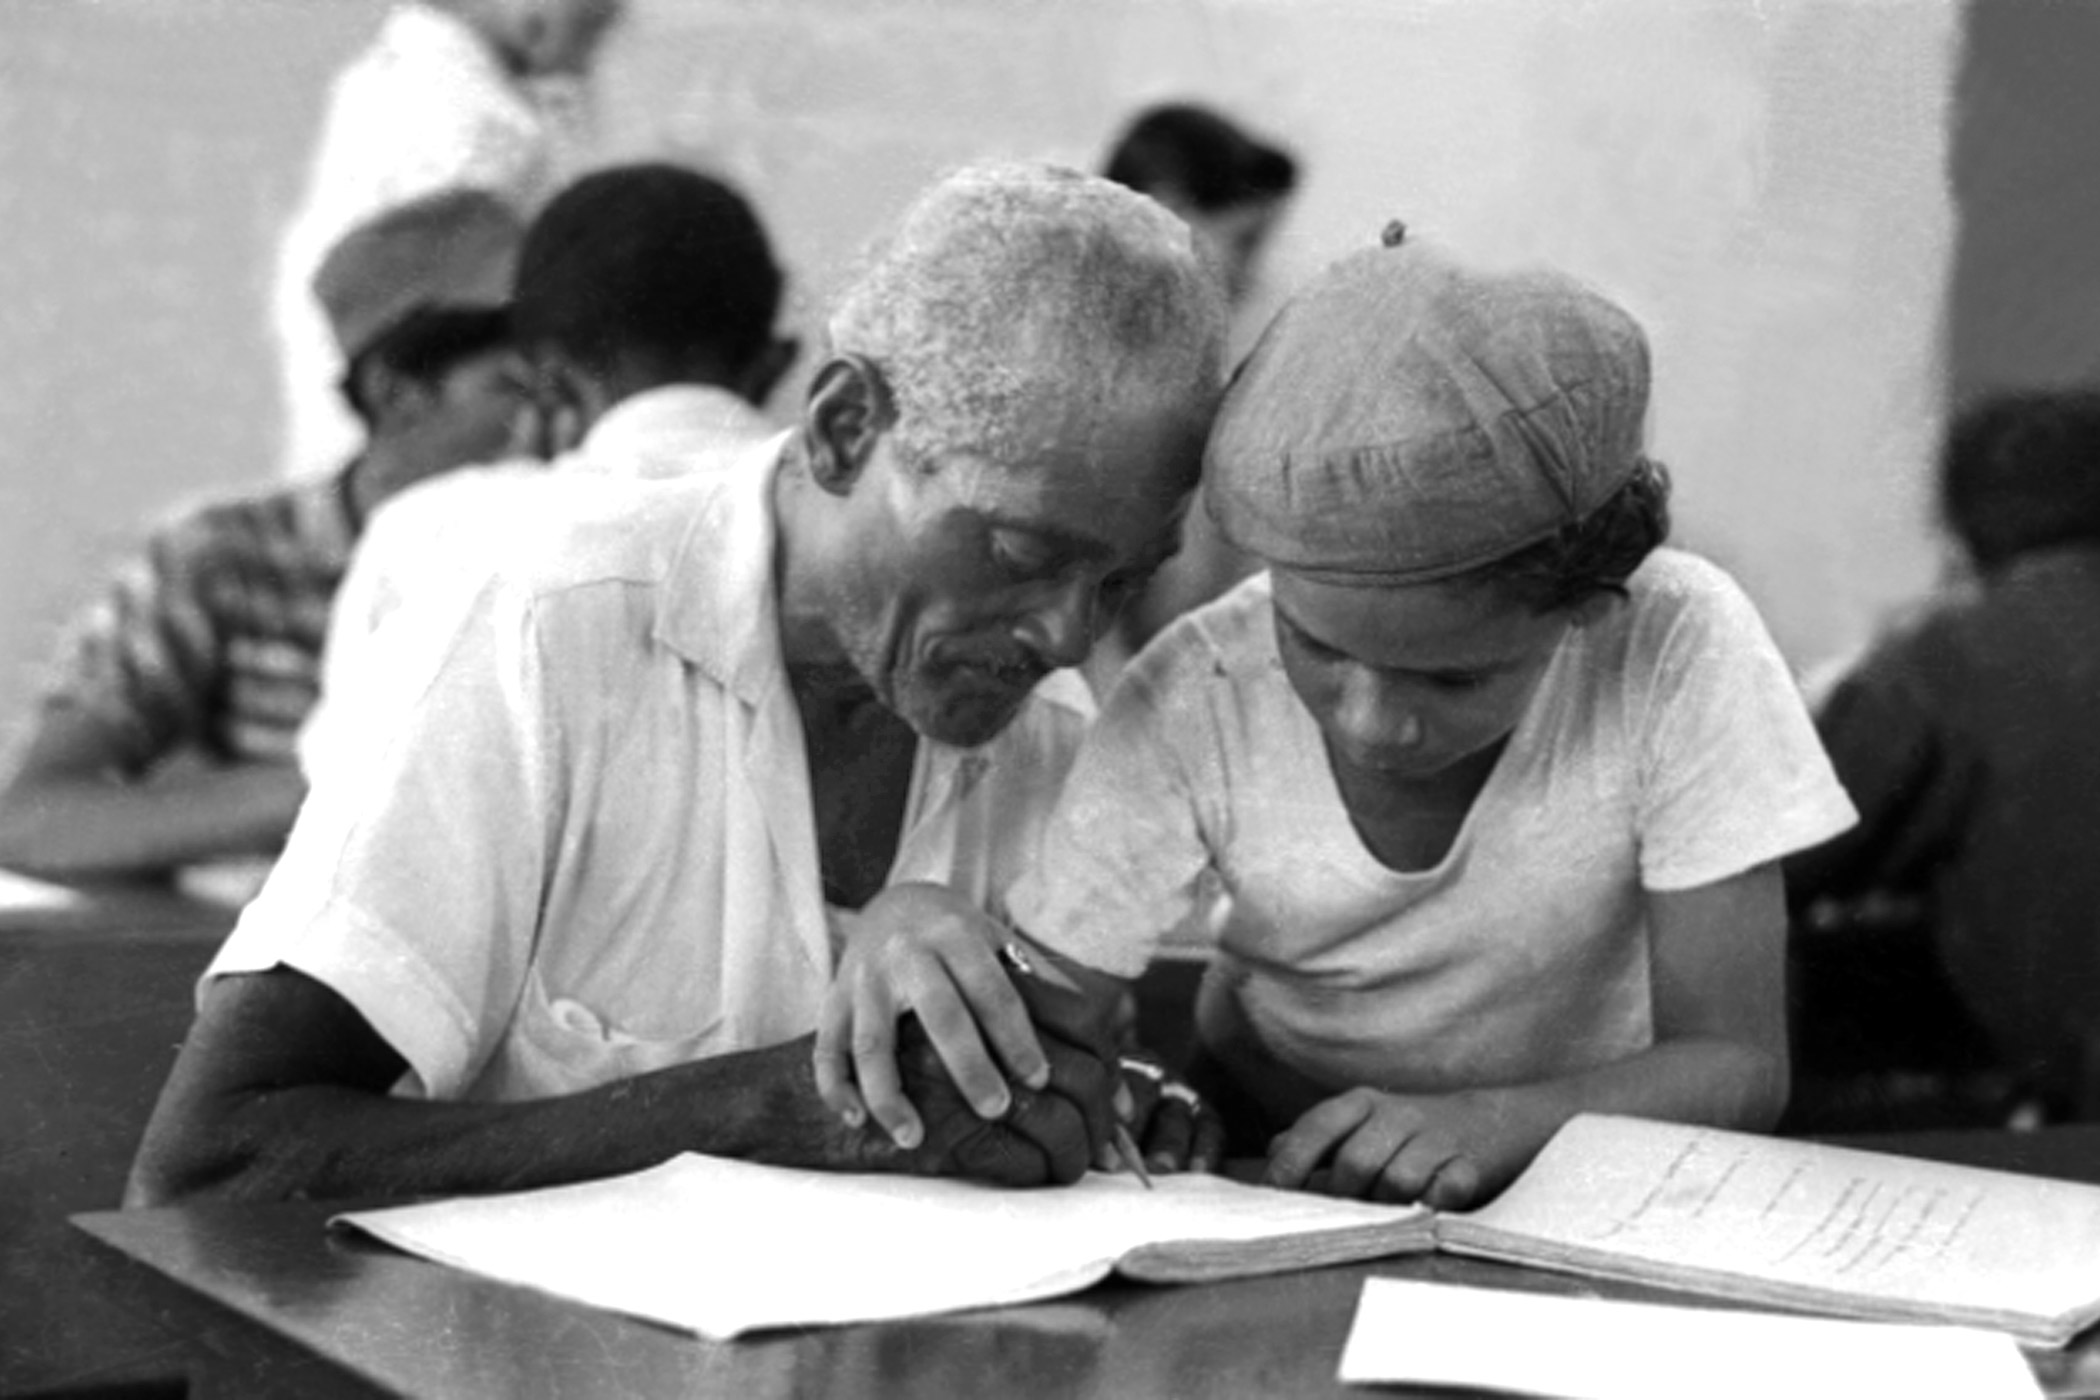 Cuba Education